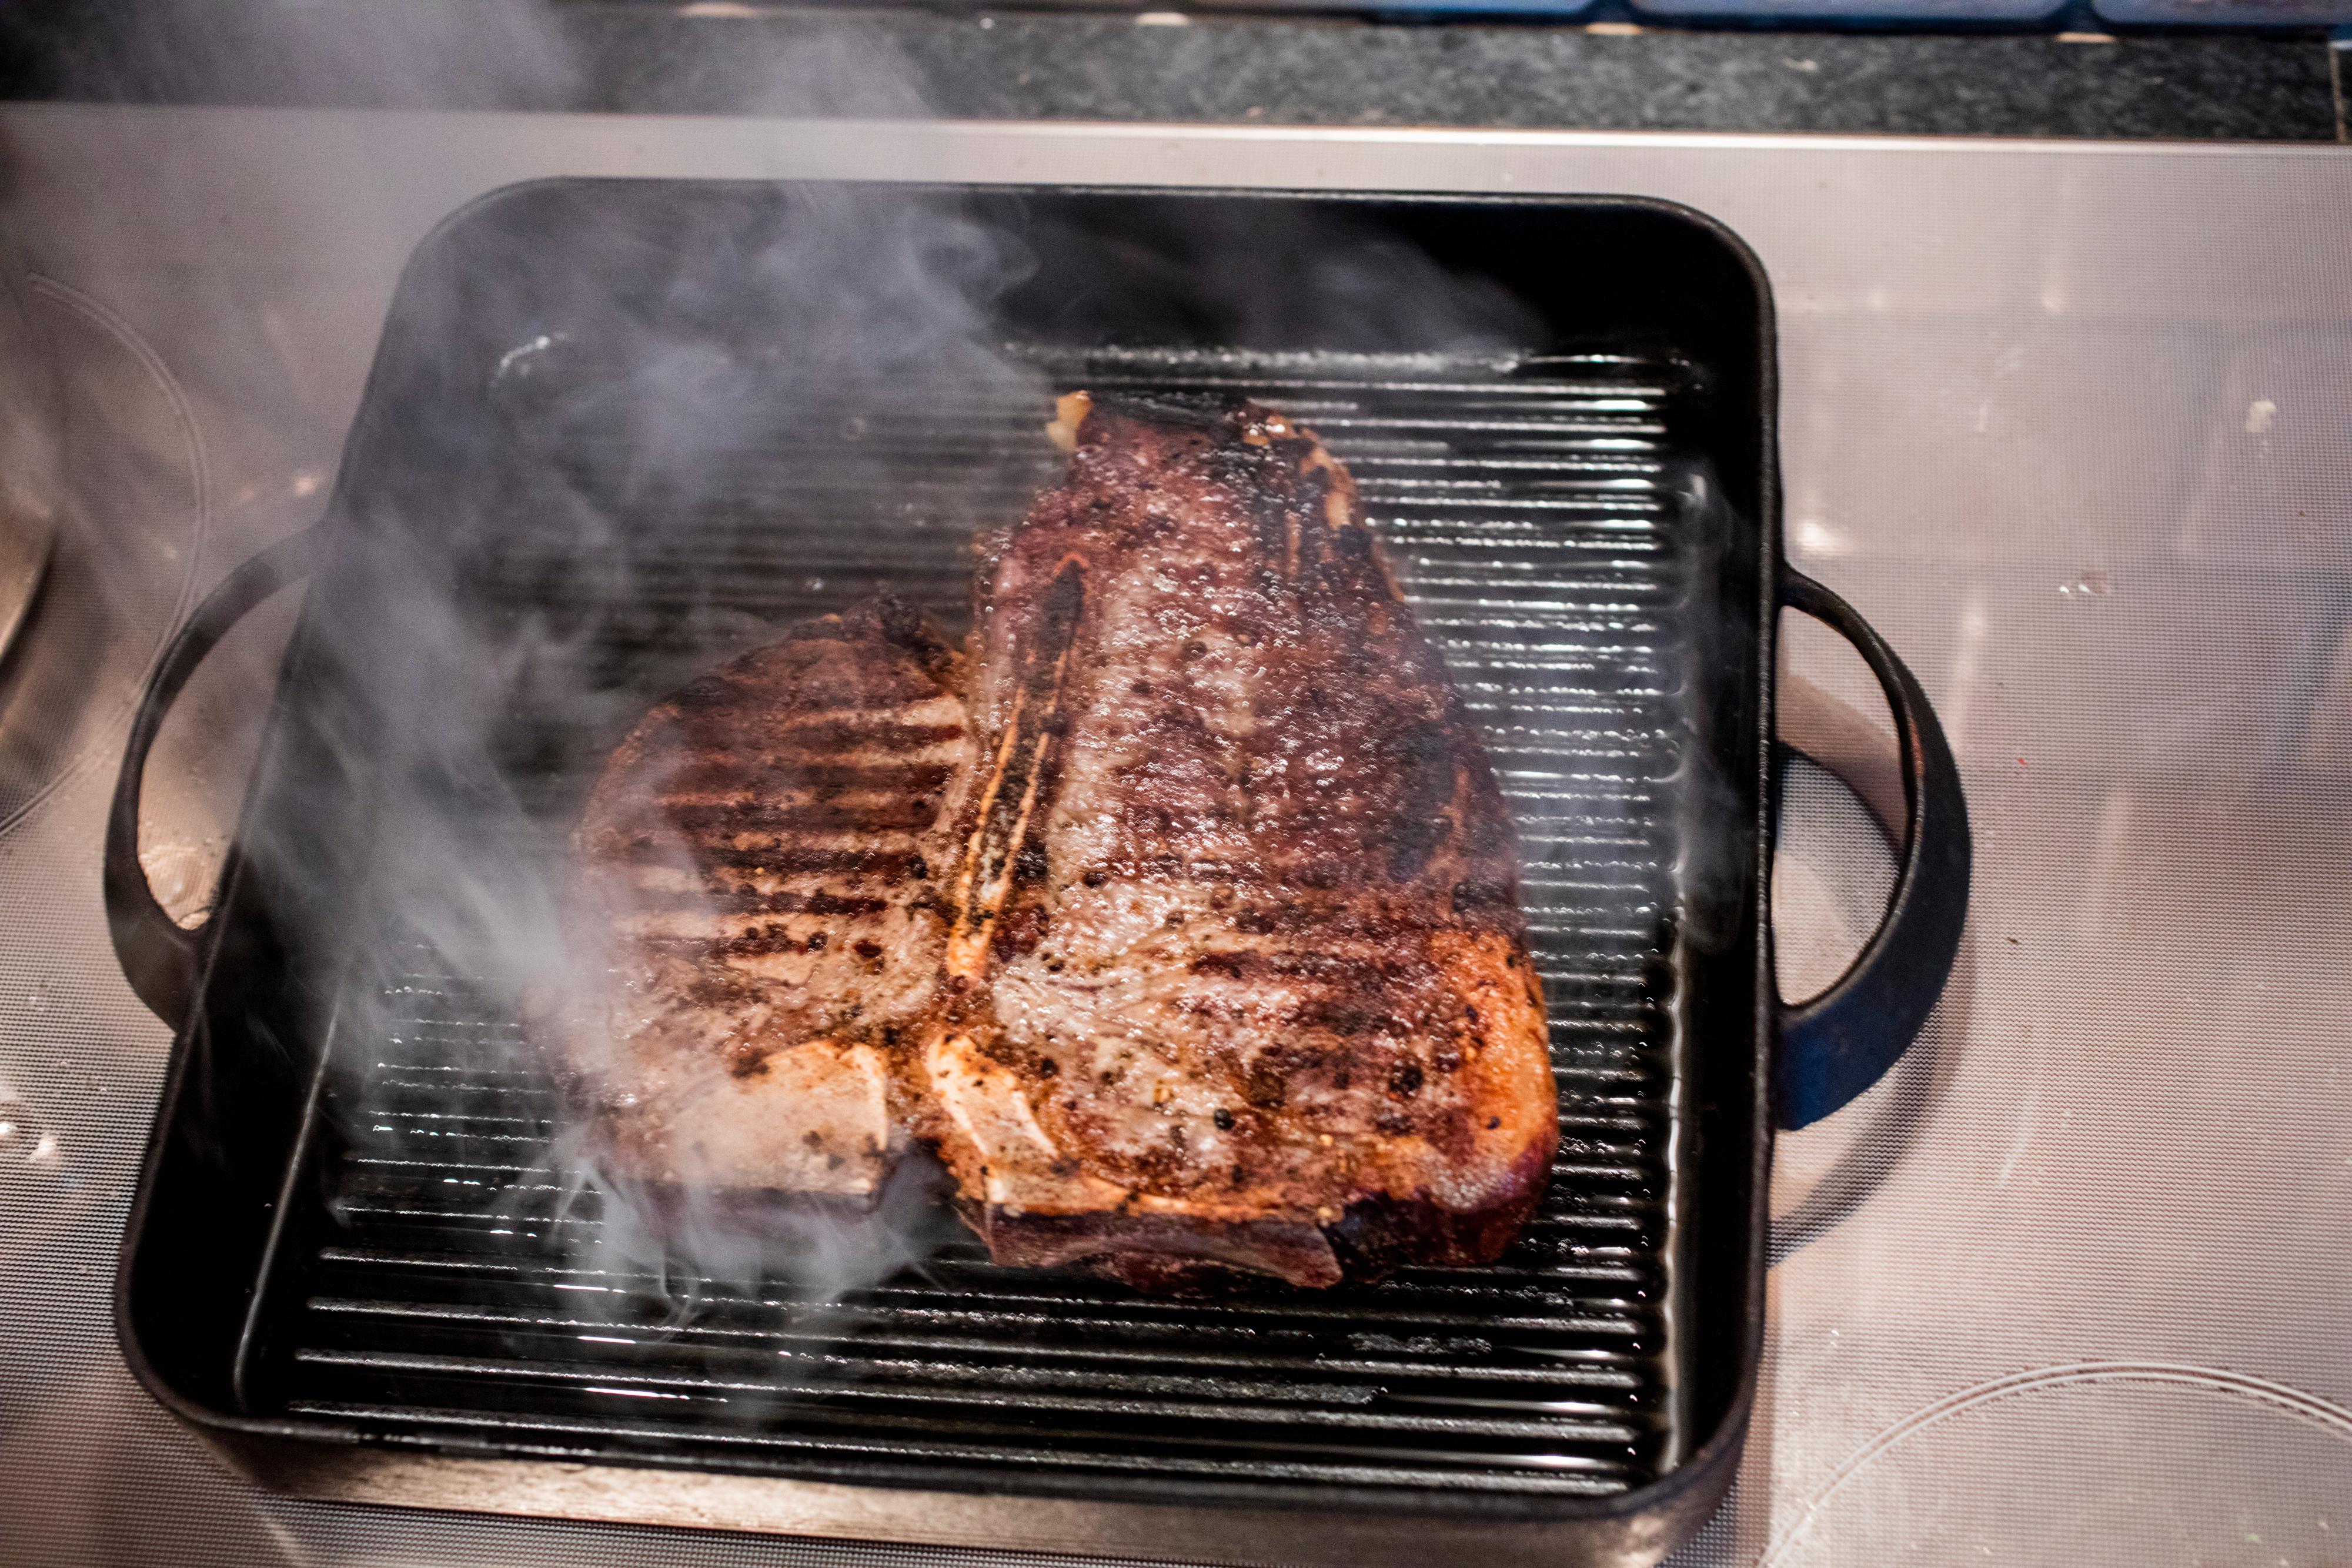 T-bone steak: Gni kjøttet godt inn med salt og kvernet pepper, ev også litt olje. Varm en grillpanne og stek/grill kjøttet over høy varme i 3-5 minutter på hver side, avhengig av tykkelsen på kjøttstykket. Husk at en t-bone steak skal ha en rød kjerne (i hvert fall hvis du spør meg). La kjøttet hvile i 10-15 minutter før servering.